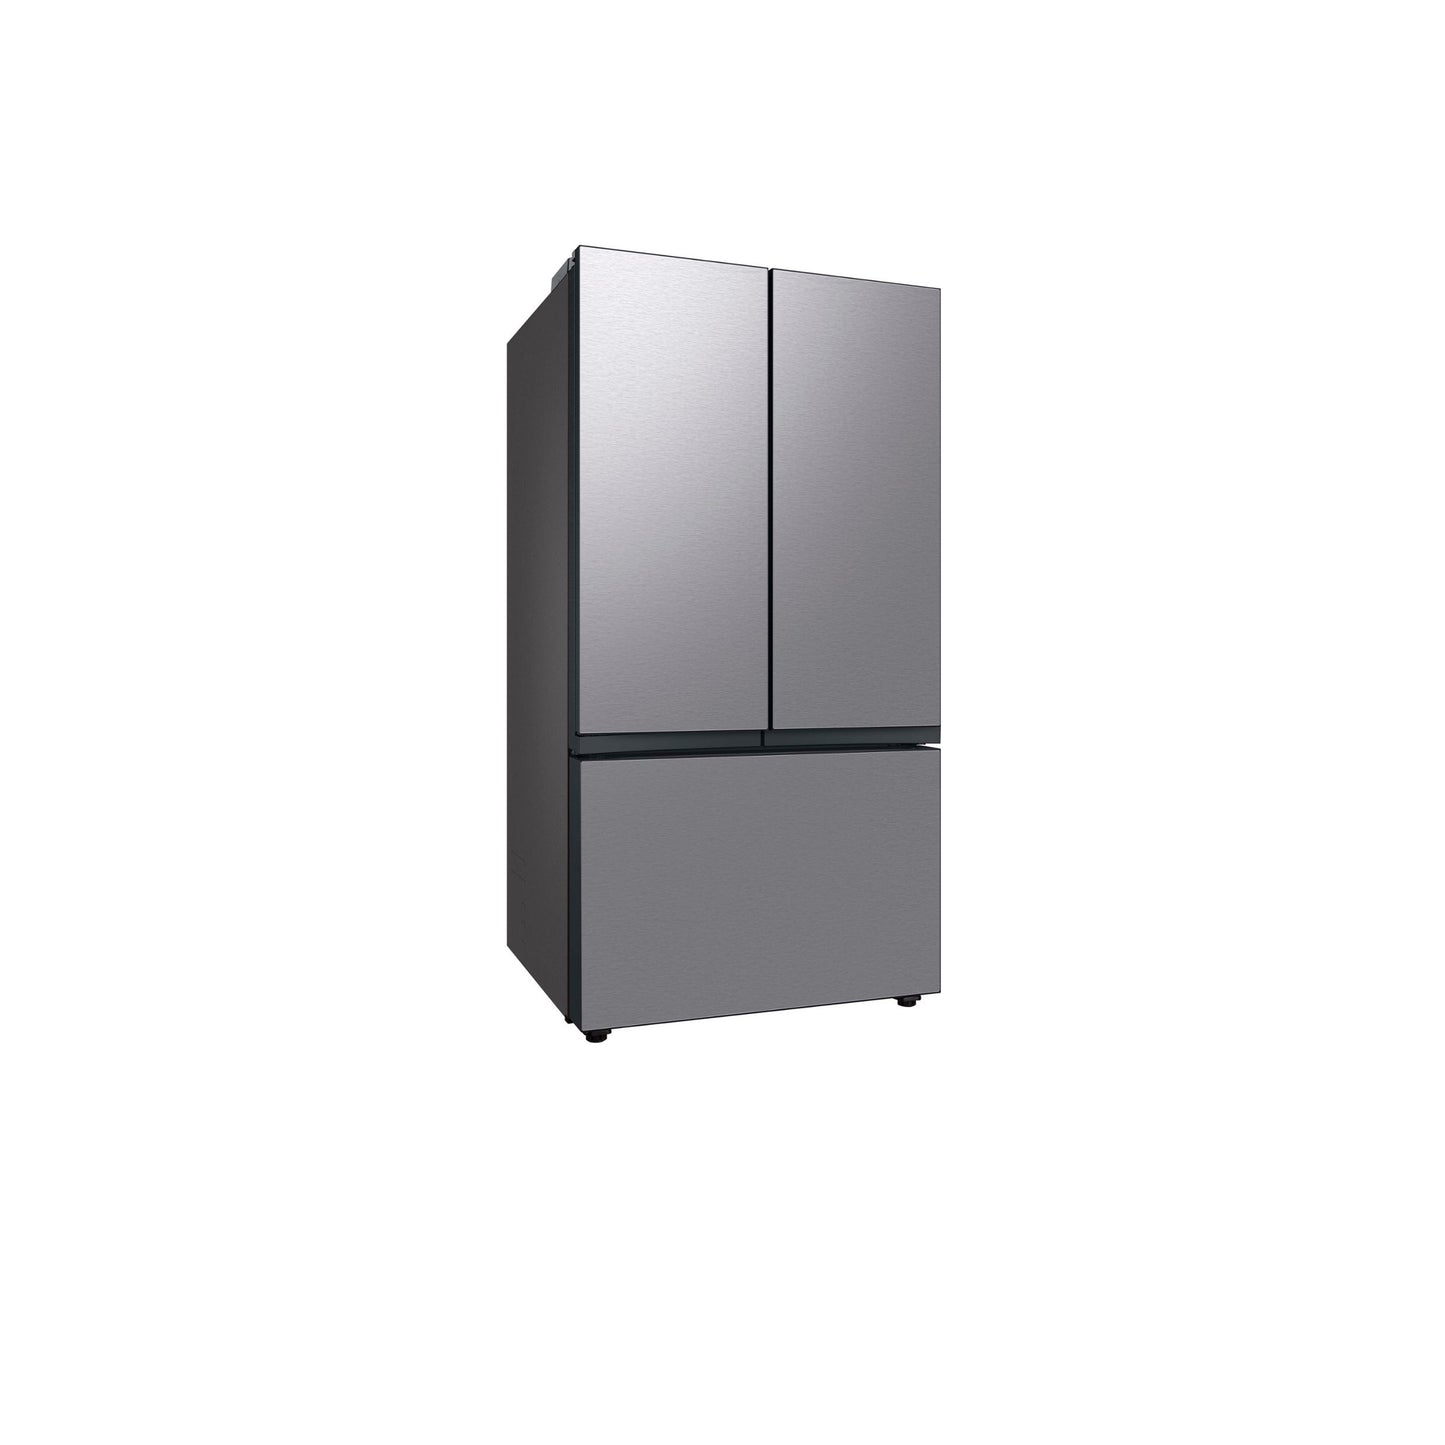 Bespoke 3-Door French Door Refrigerator (30 cu. ft.) with Beverage Center™ in Stainless Steel.